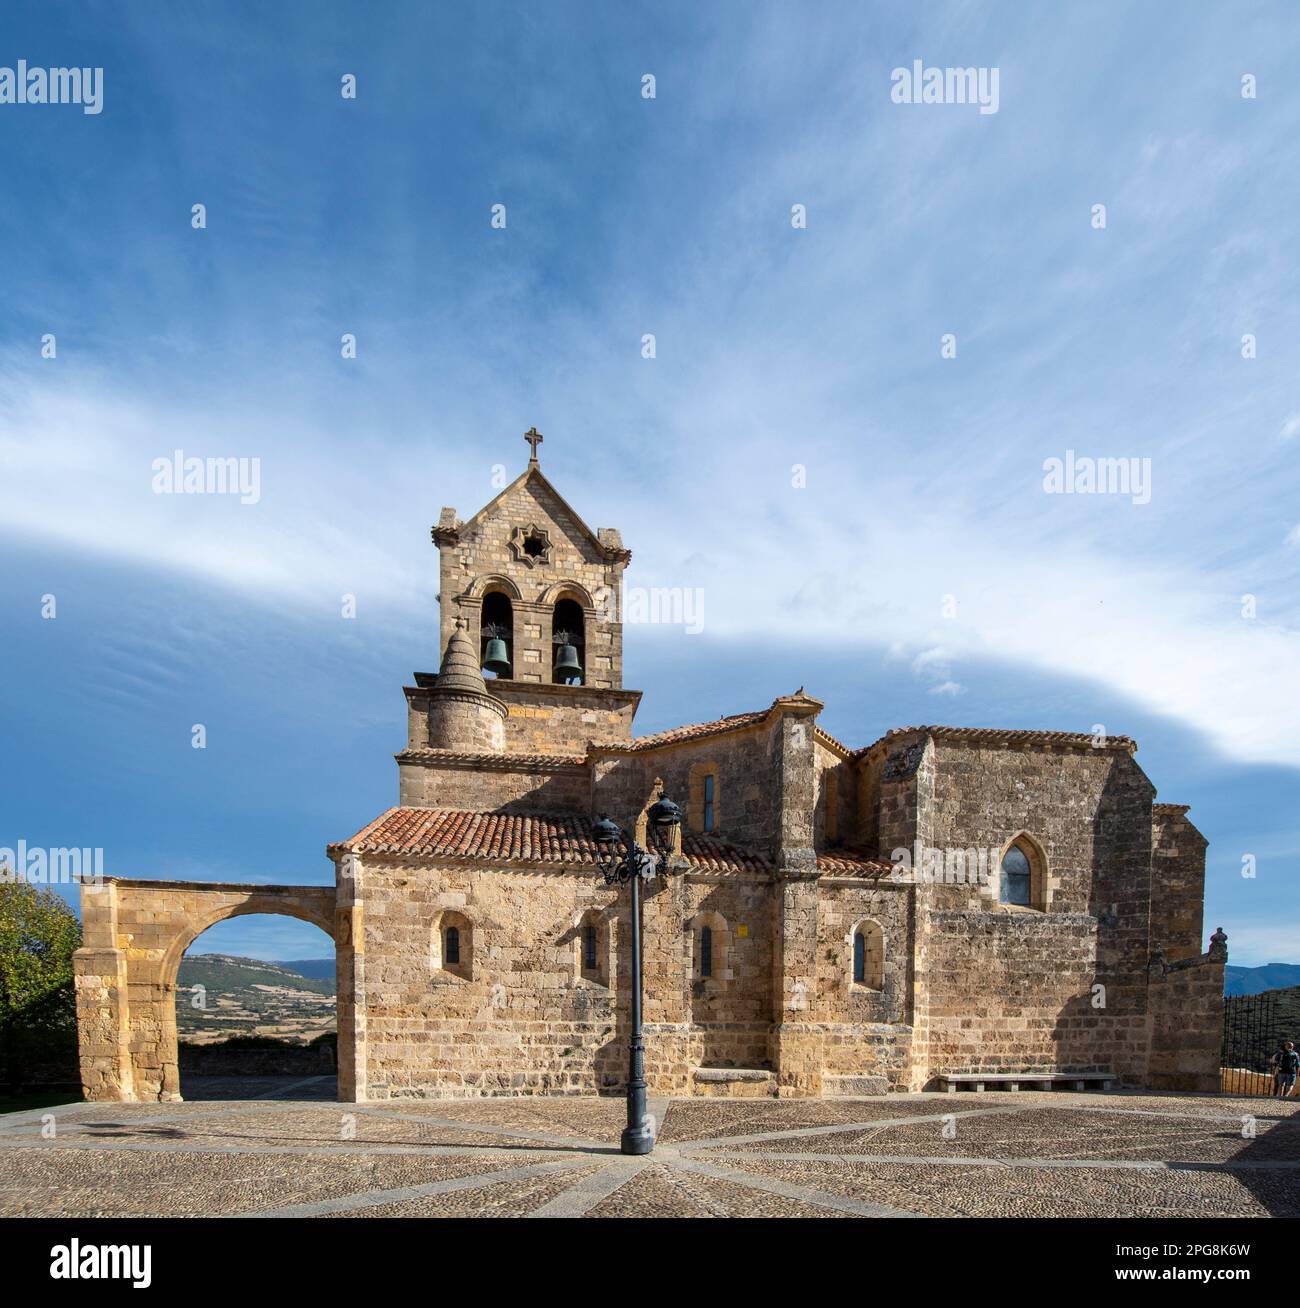 Une superbe image de l'église San Vicente Martir dans un état immaculé contre un magnifique ciel bleu Banque D'Images